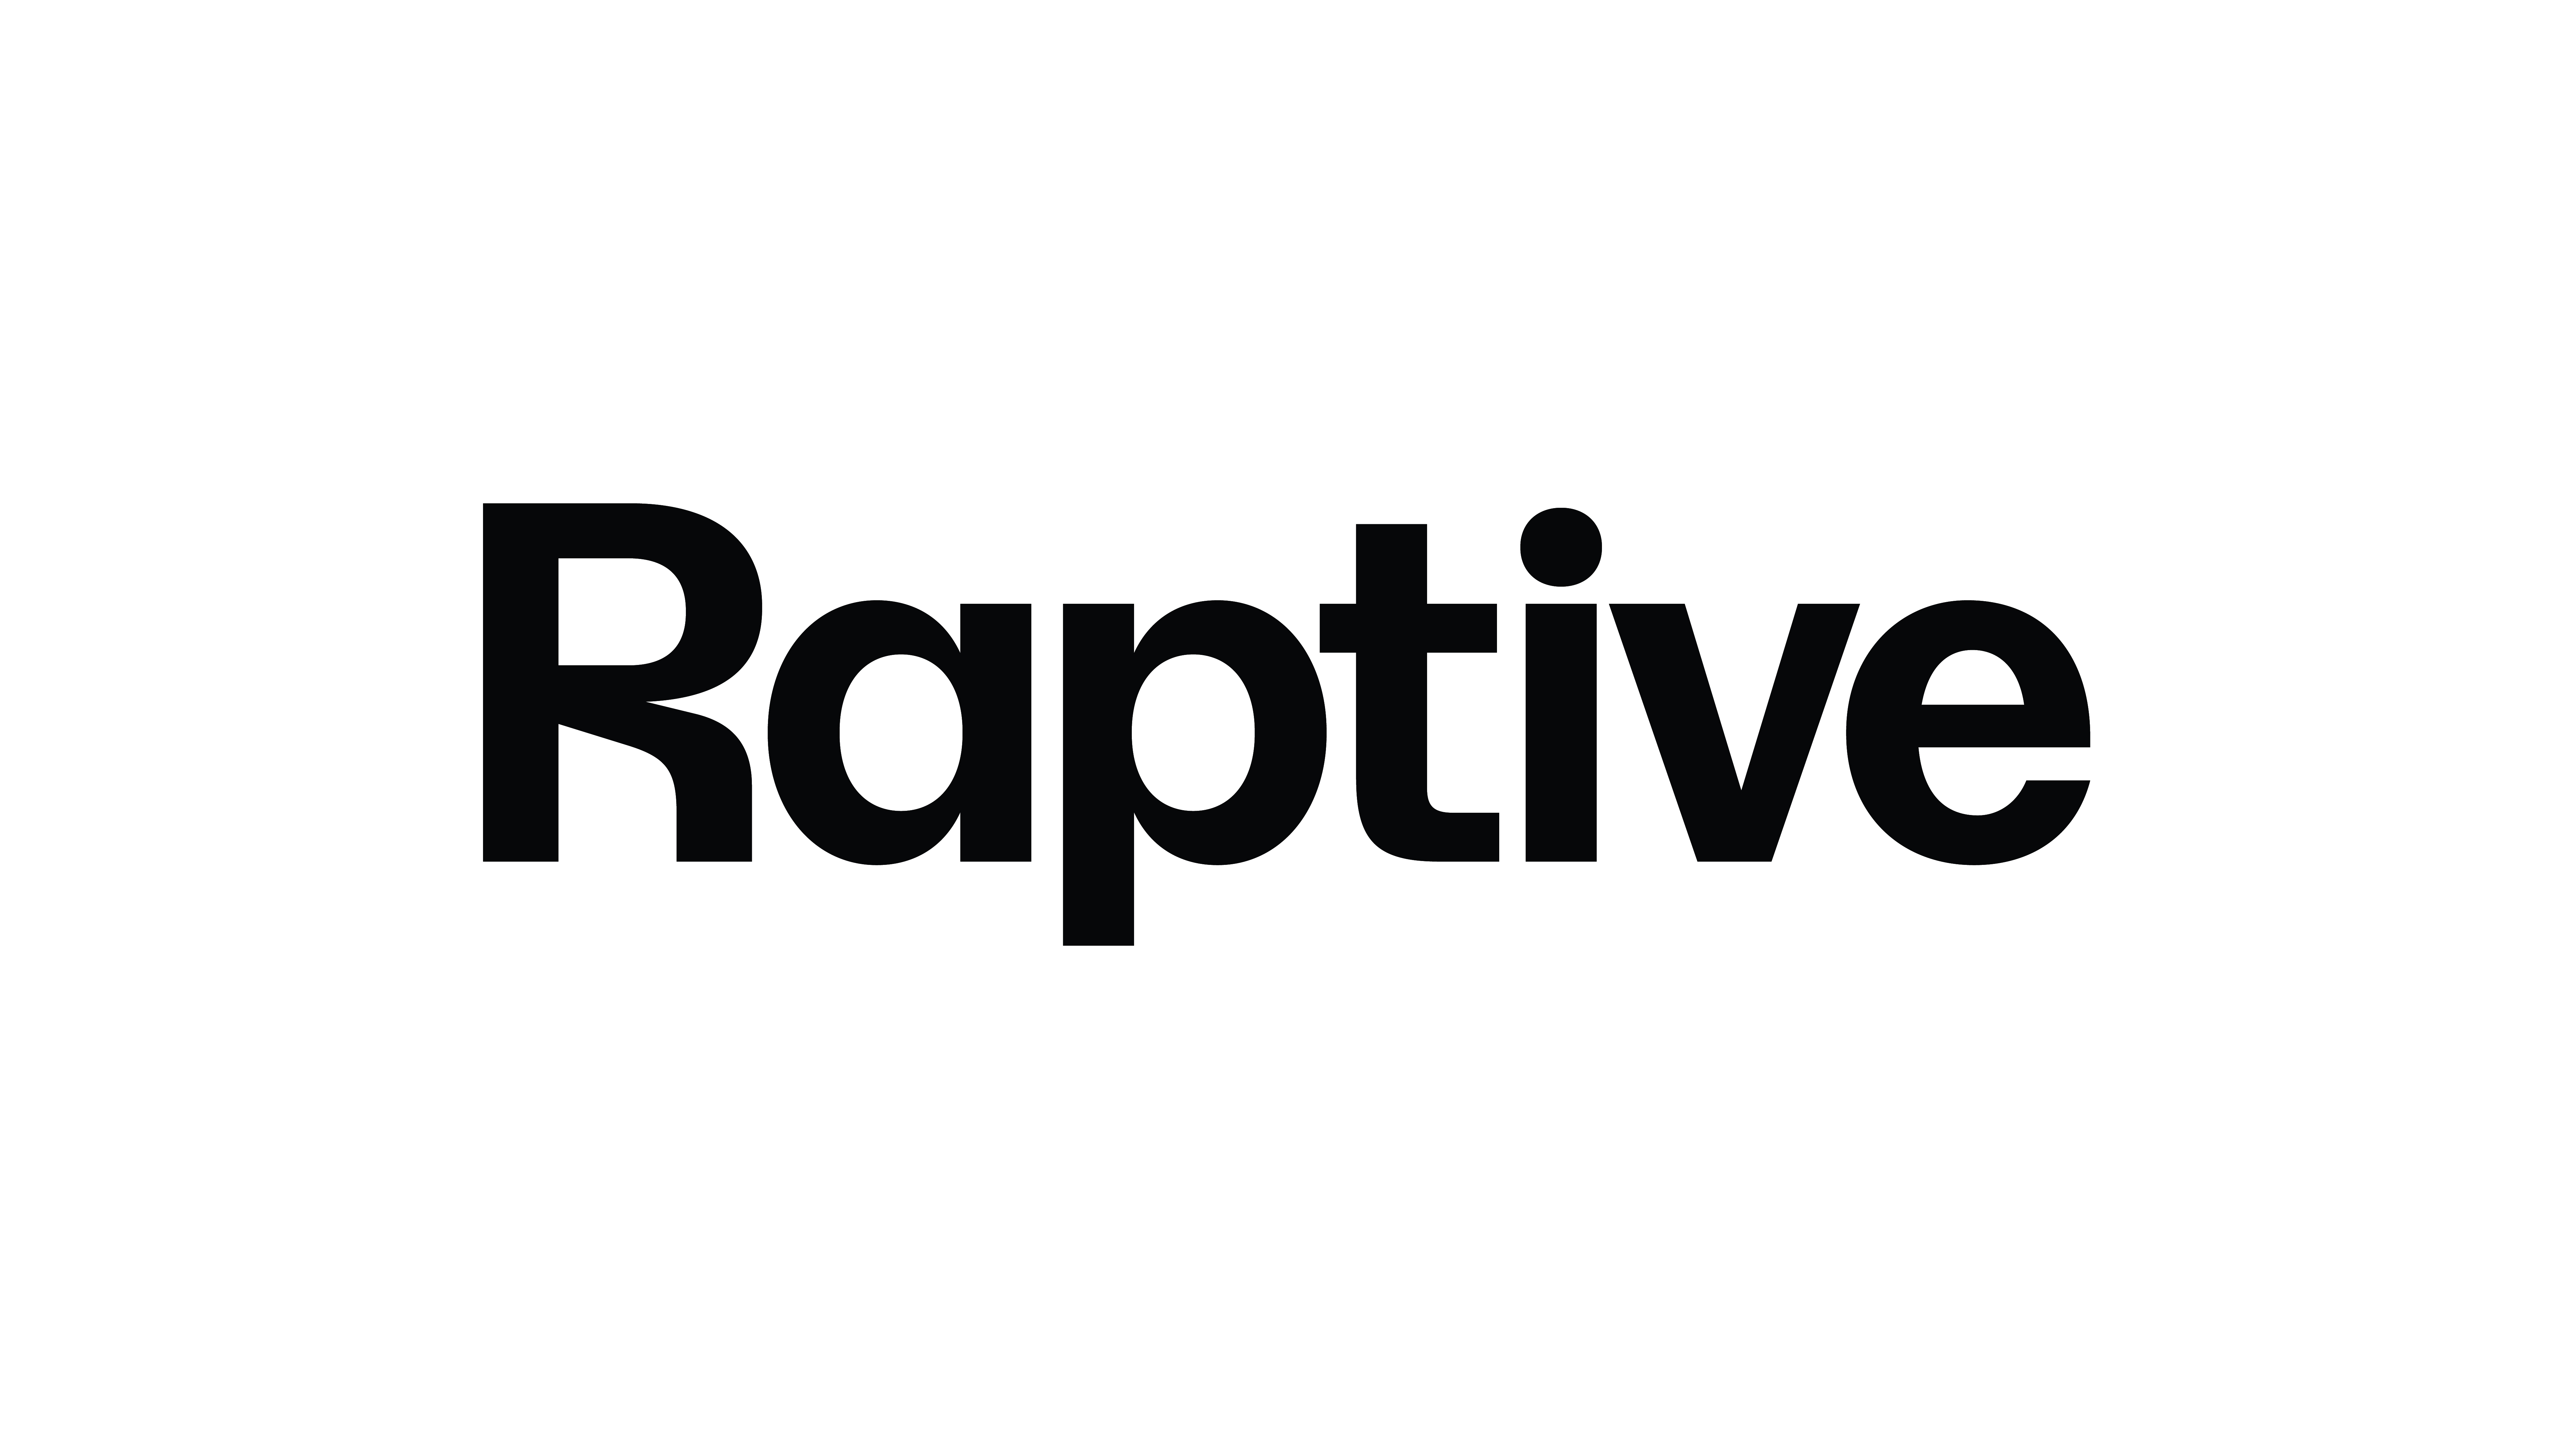 Meet Raptive, a new kind of creator company